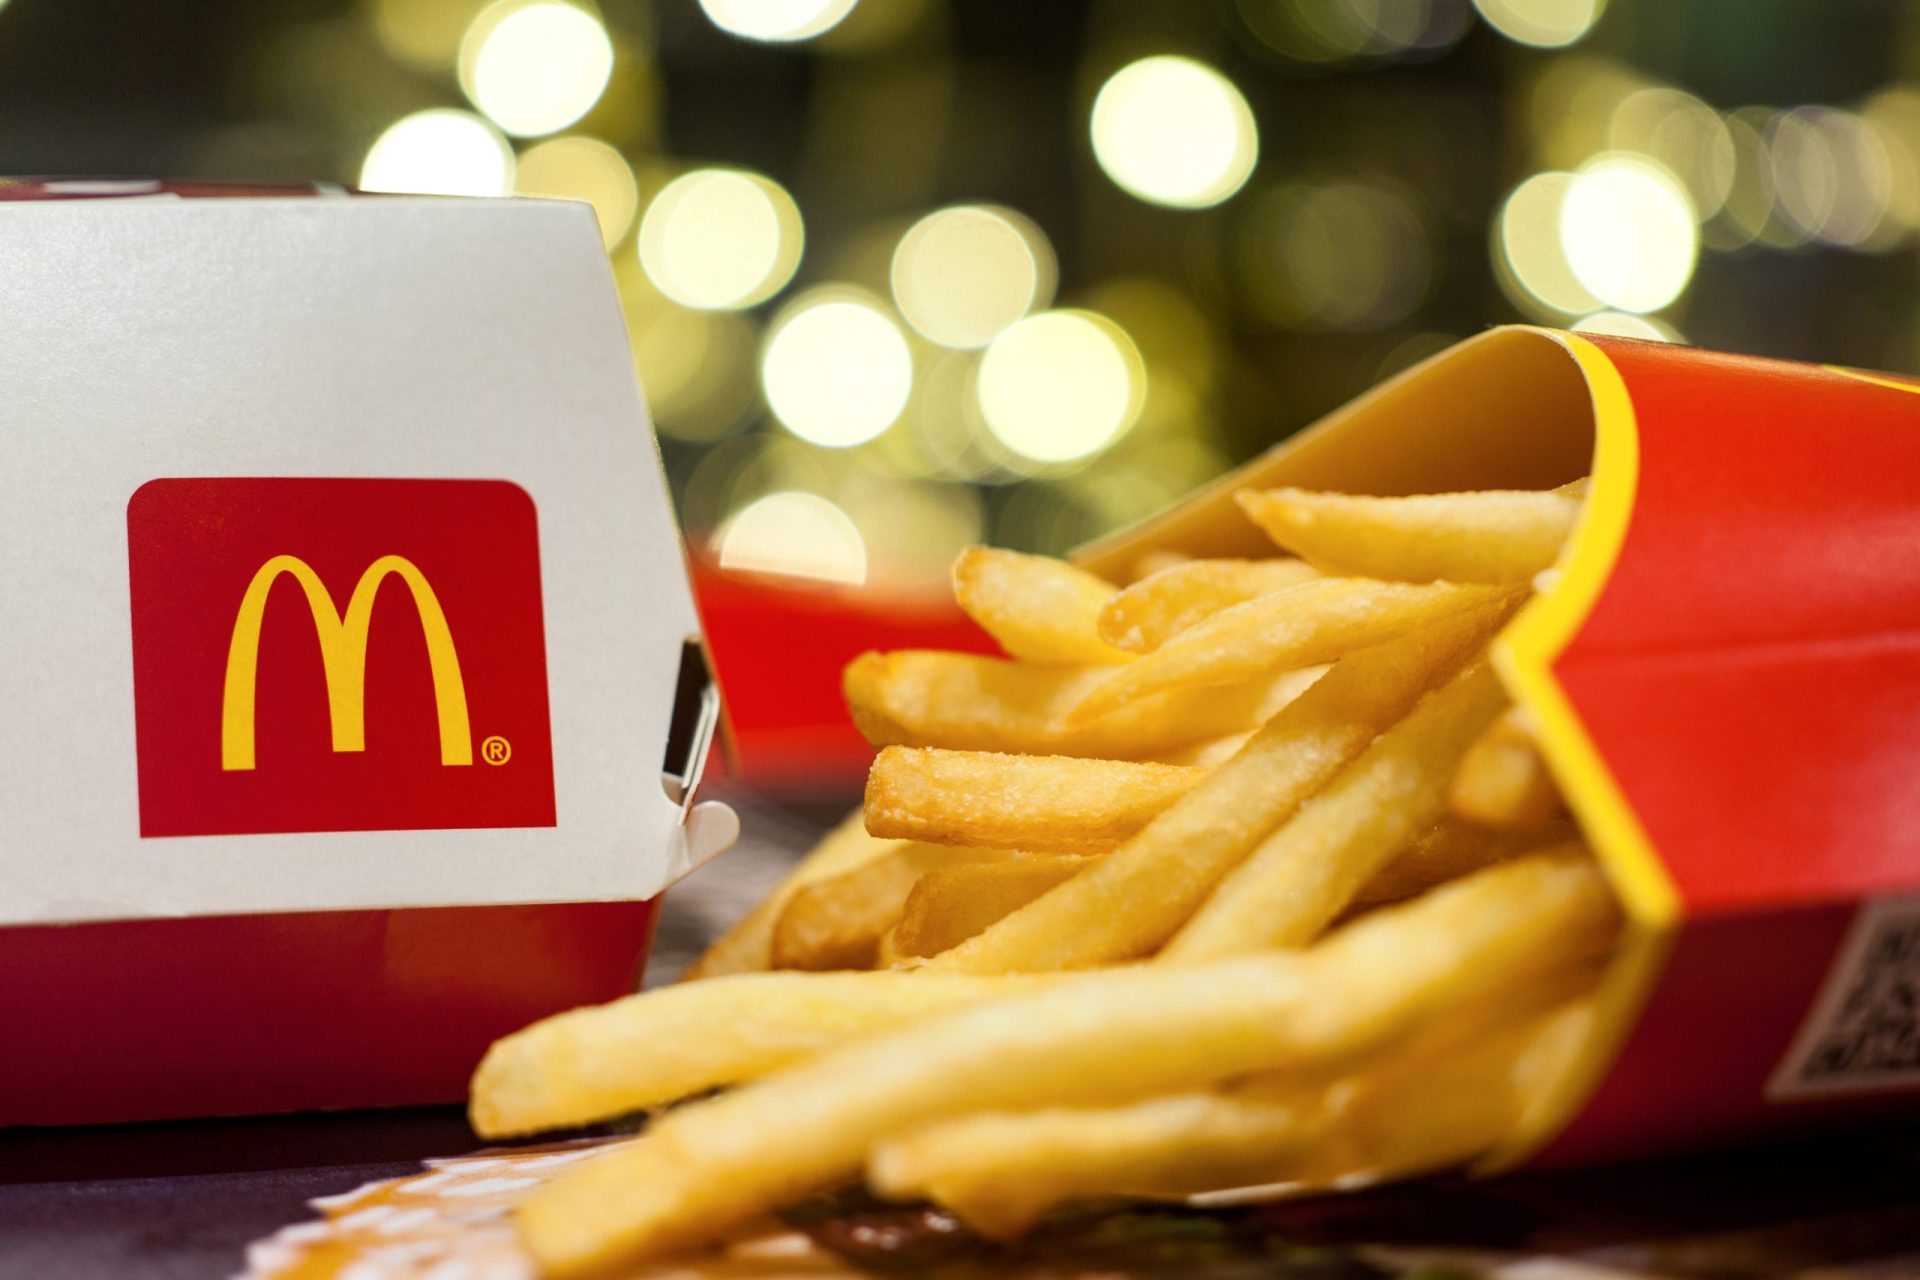 Restaurantes McDonald’s no Japão obrigados a reduzir porção de batatas fritas devido a crise de distribuição